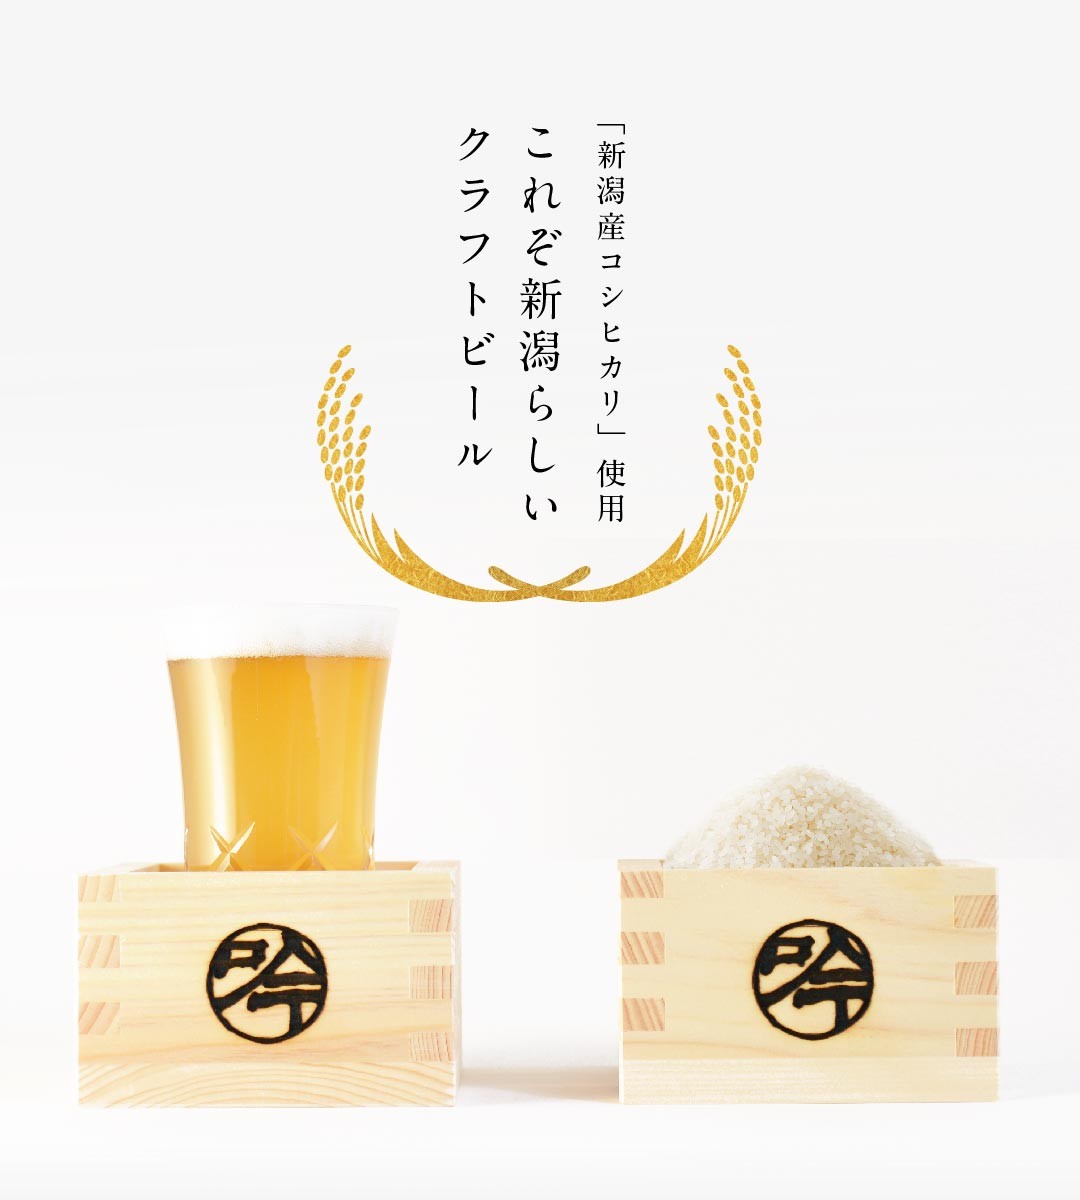 「新潟産コシヒカリ」使用 これぞ新潟らしいクラフトビール